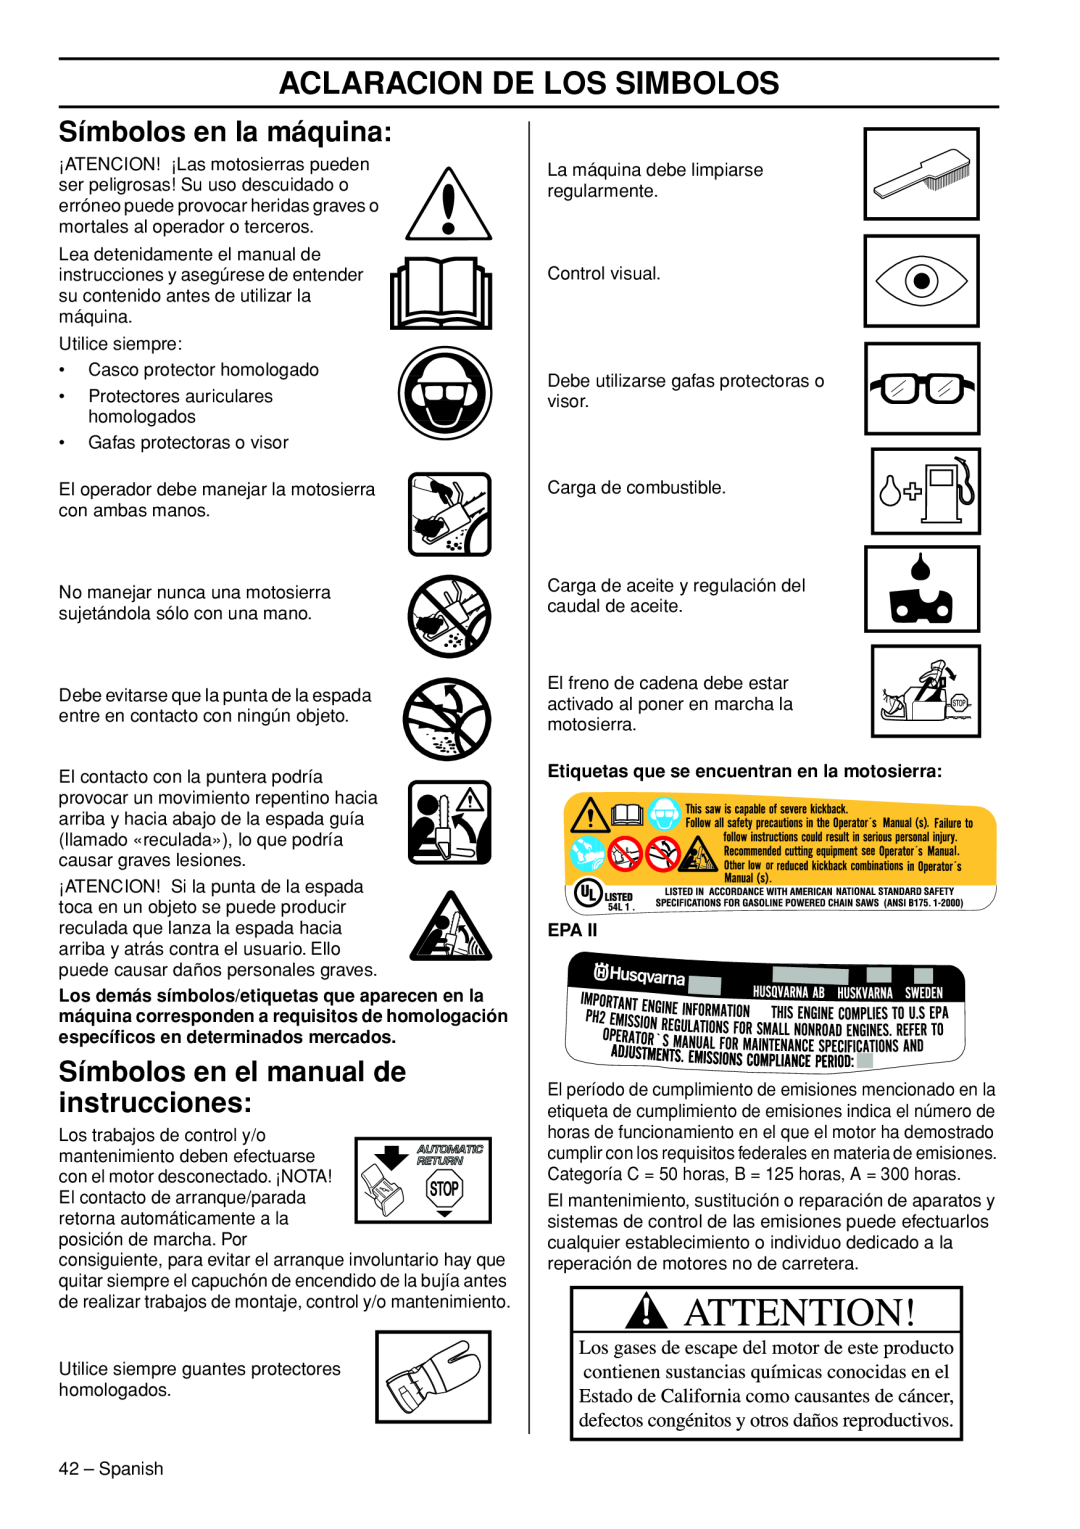 Husqvarna 445e TrioBrake Aclaracion De Los Simbolos, Símbolos en la máquina, Símbolos en el manual de instrucciones 